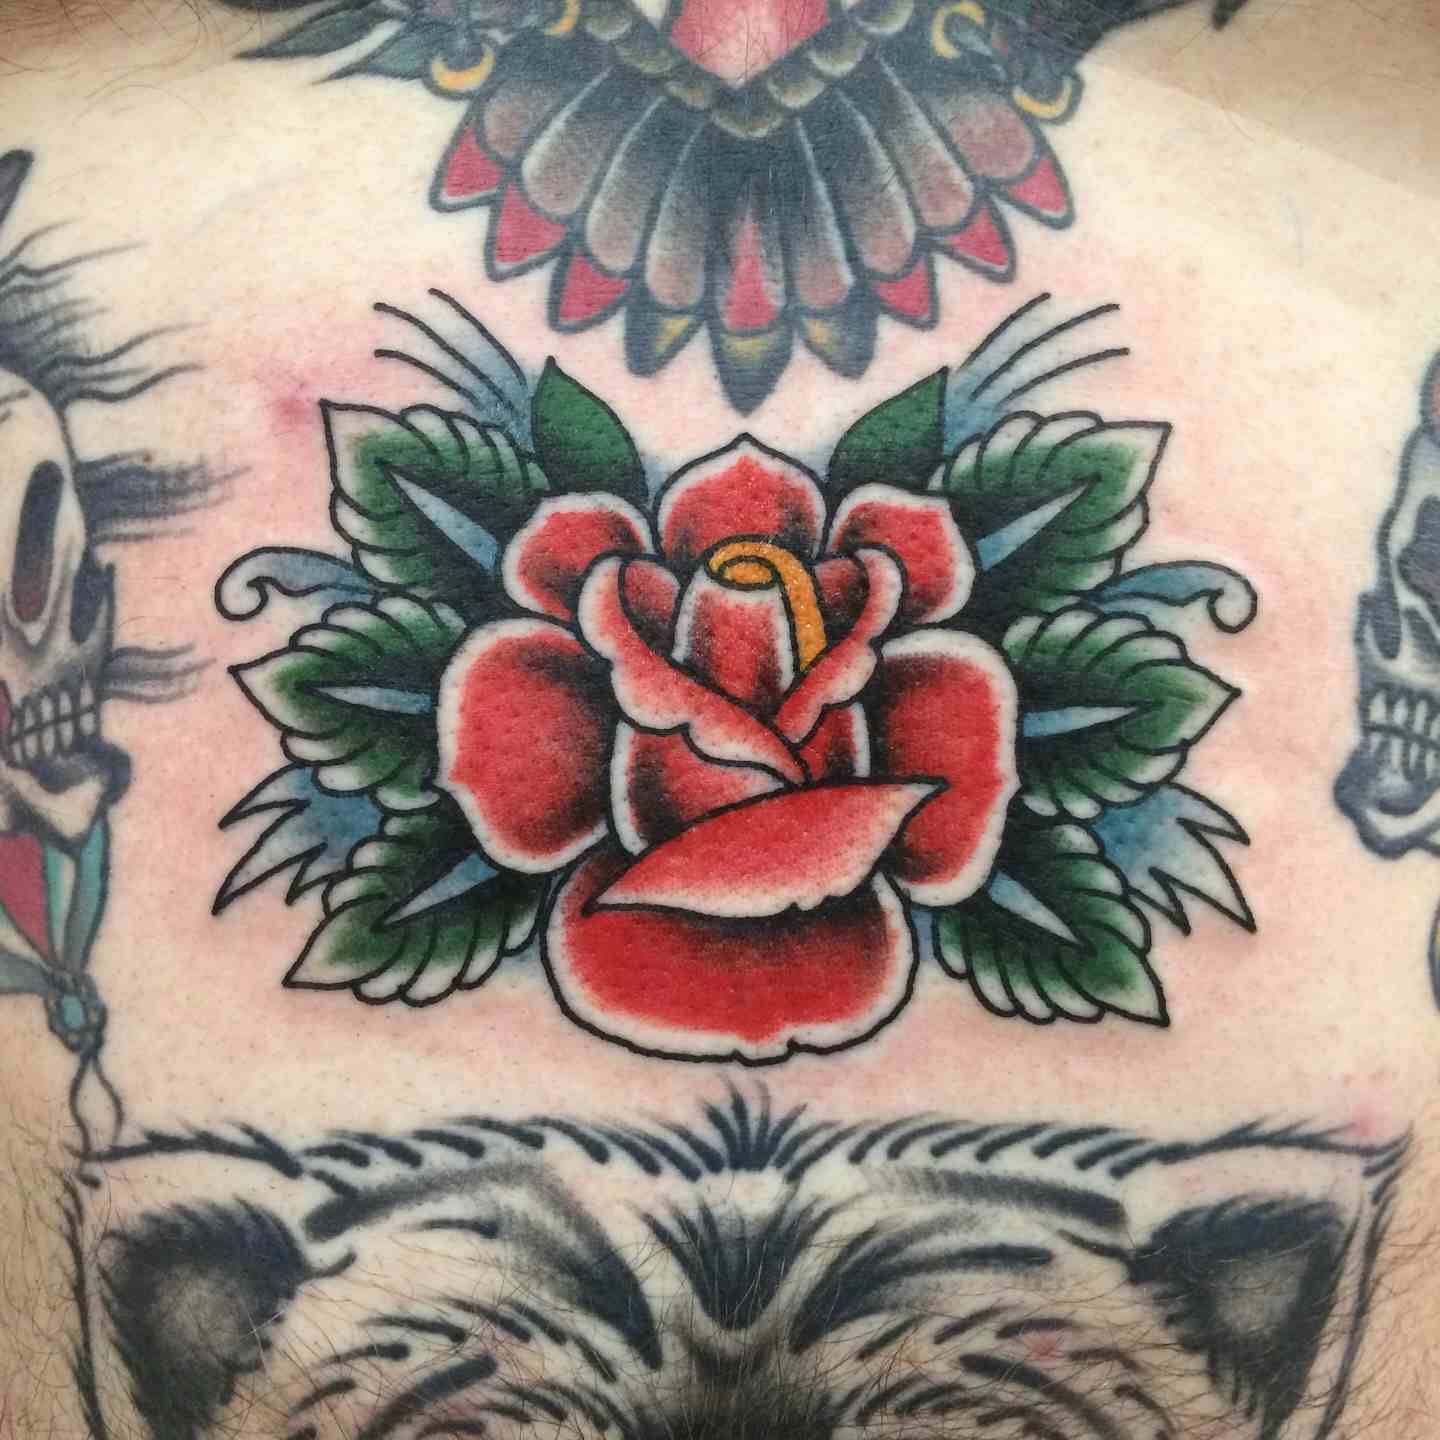 Sternum rose tattoo